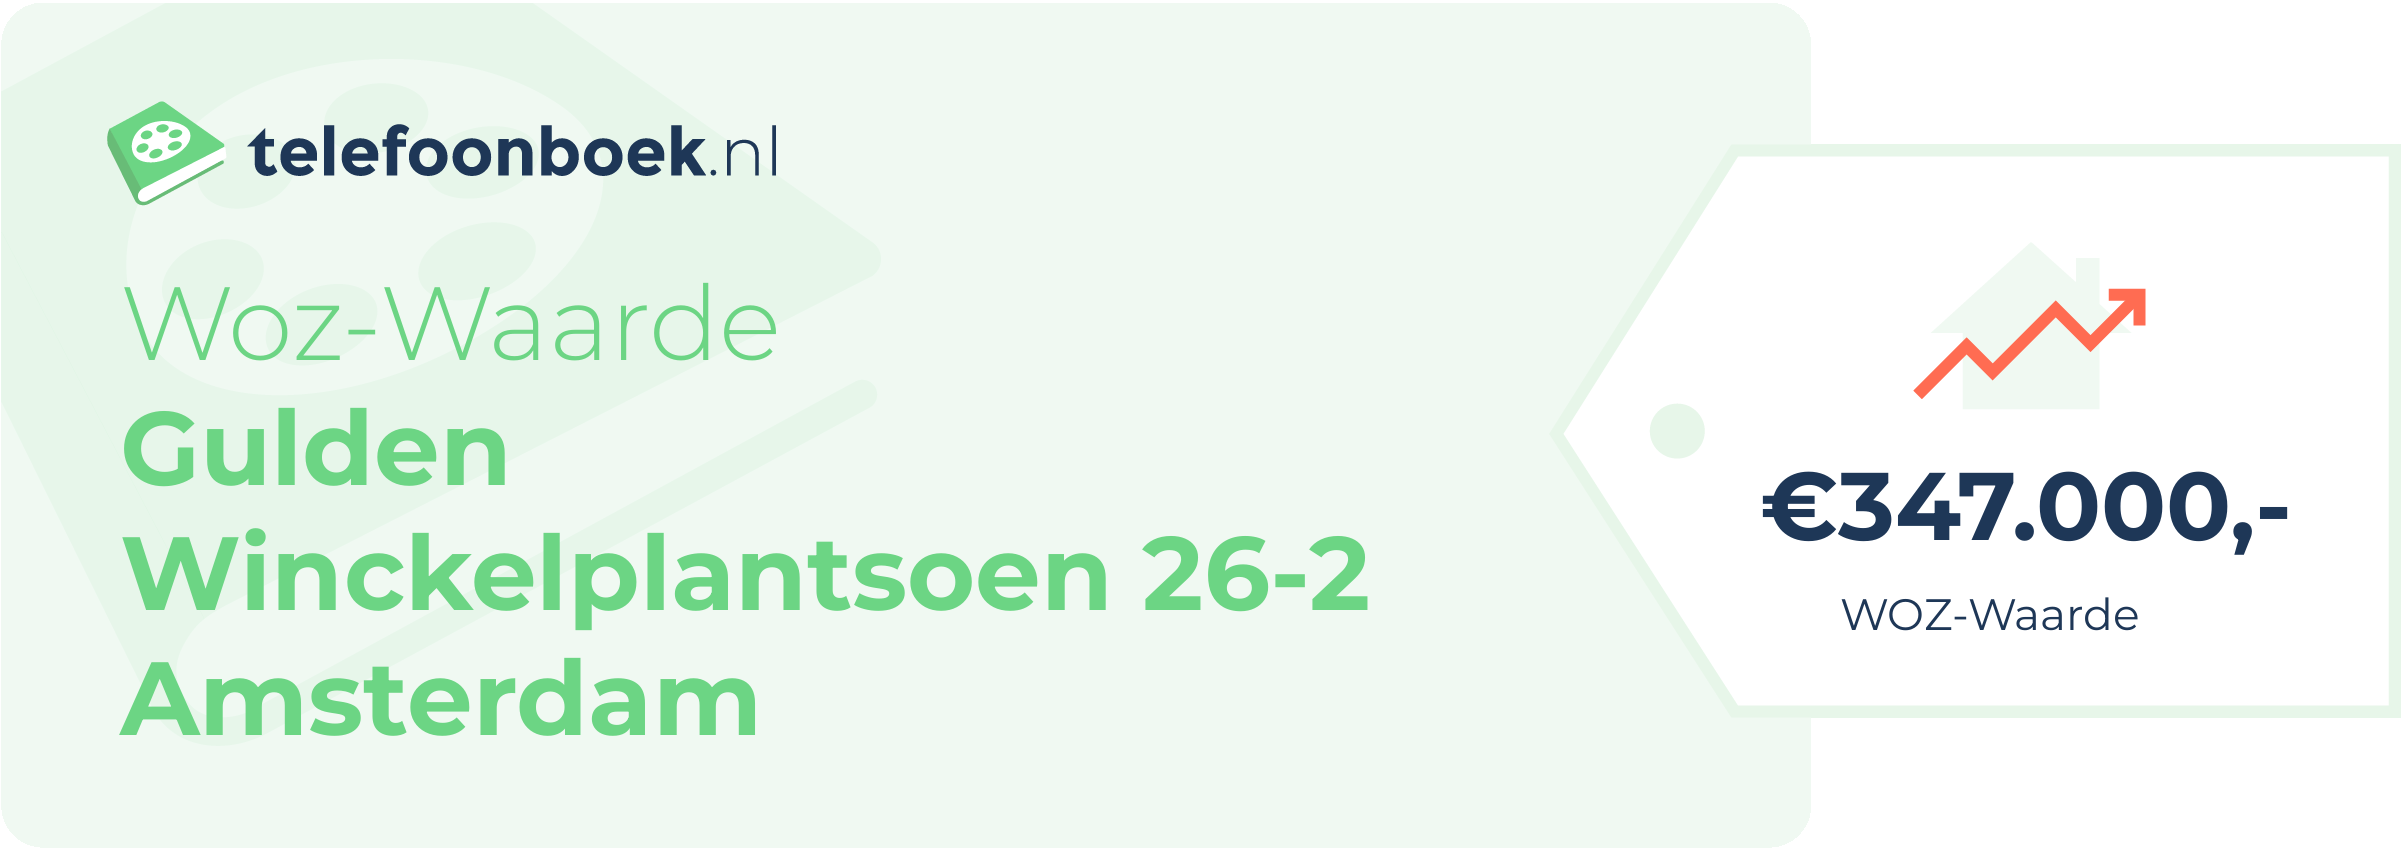 WOZ-waarde Gulden Winckelplantsoen 26-2 Amsterdam